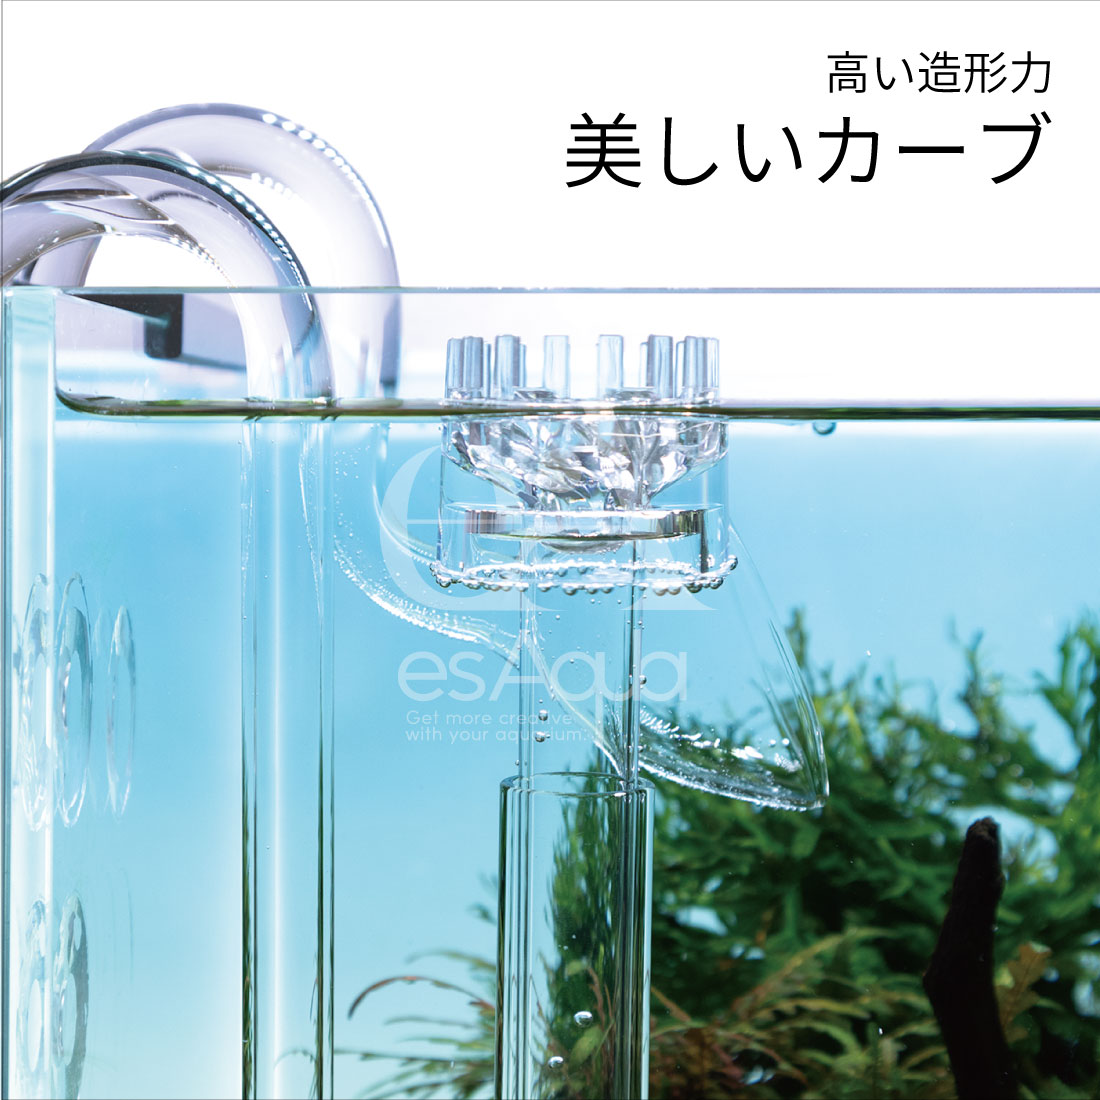 esAqua 水槽 ガラスパイプ【ハイクリアガラス採用】17mmスキマー入水パイプ + リリィ出水パイプセット＜16/22mm ホース対応＞  アクアリウム 外部フィルター